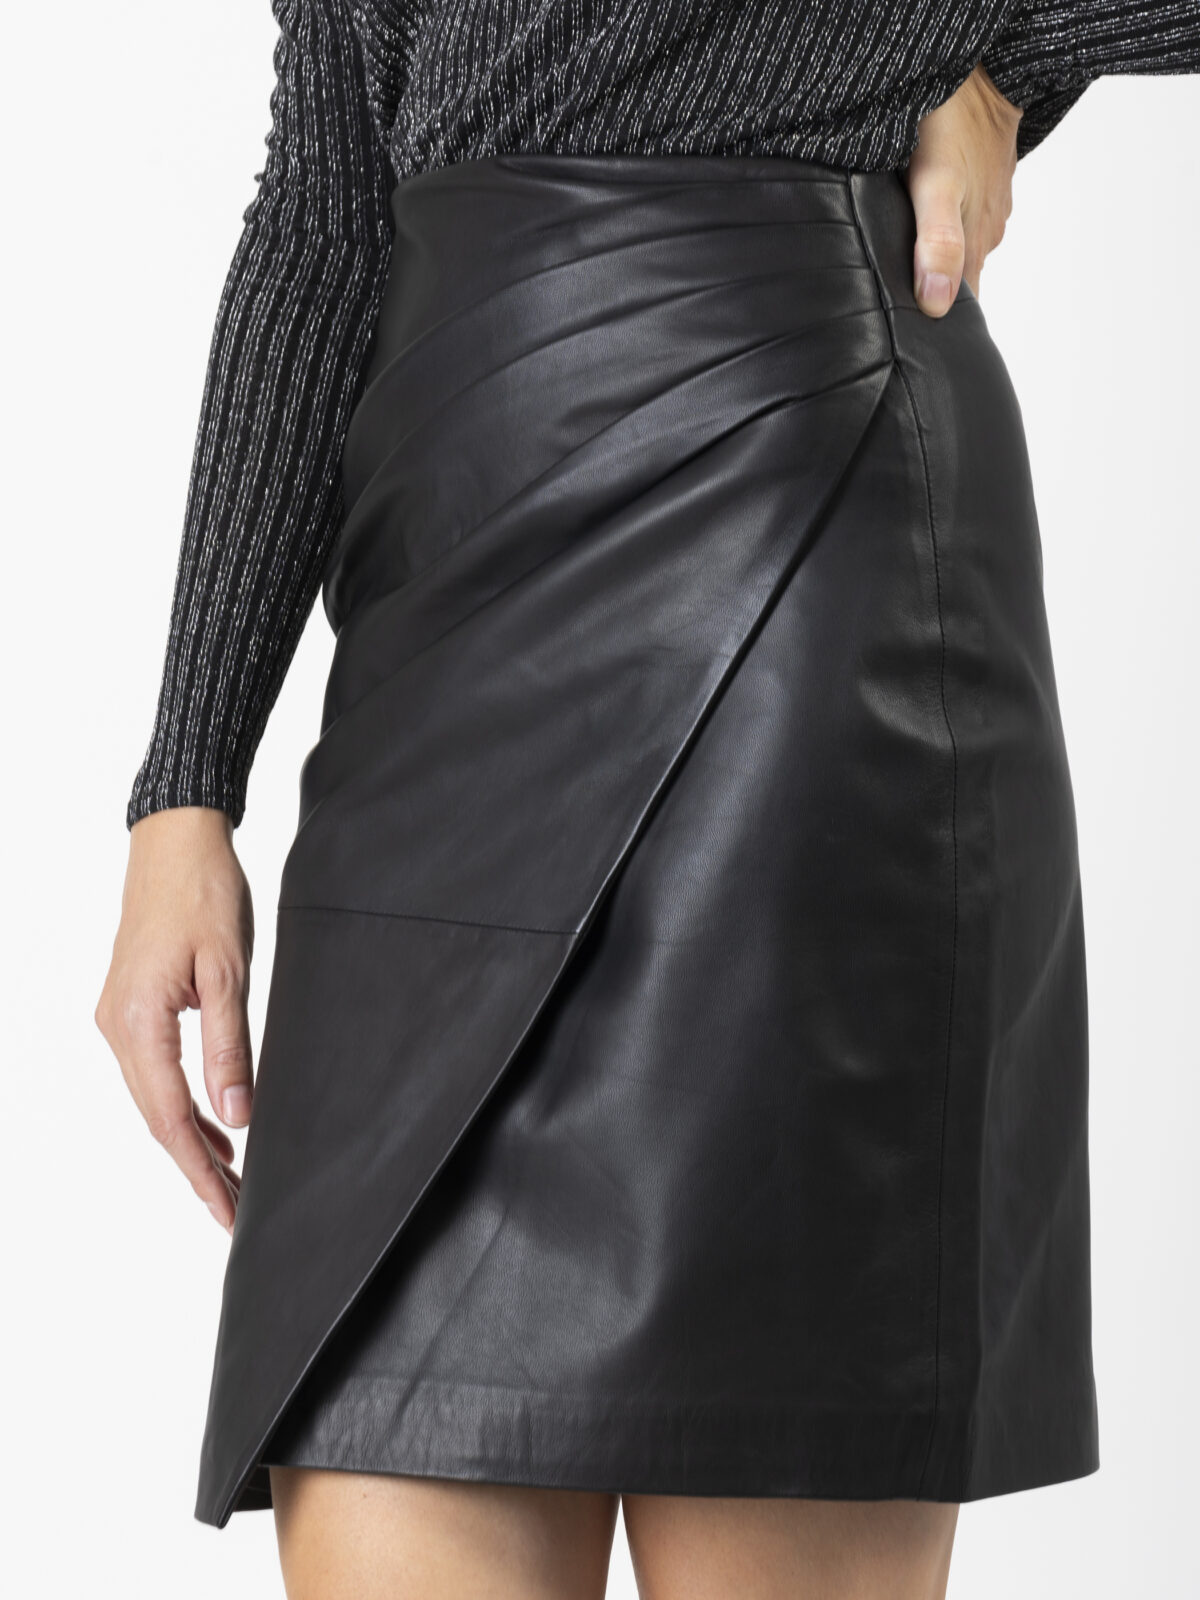 jeny-mini-black-leather-skirt-wrap-gathered-slit-berenice-matchboxathens